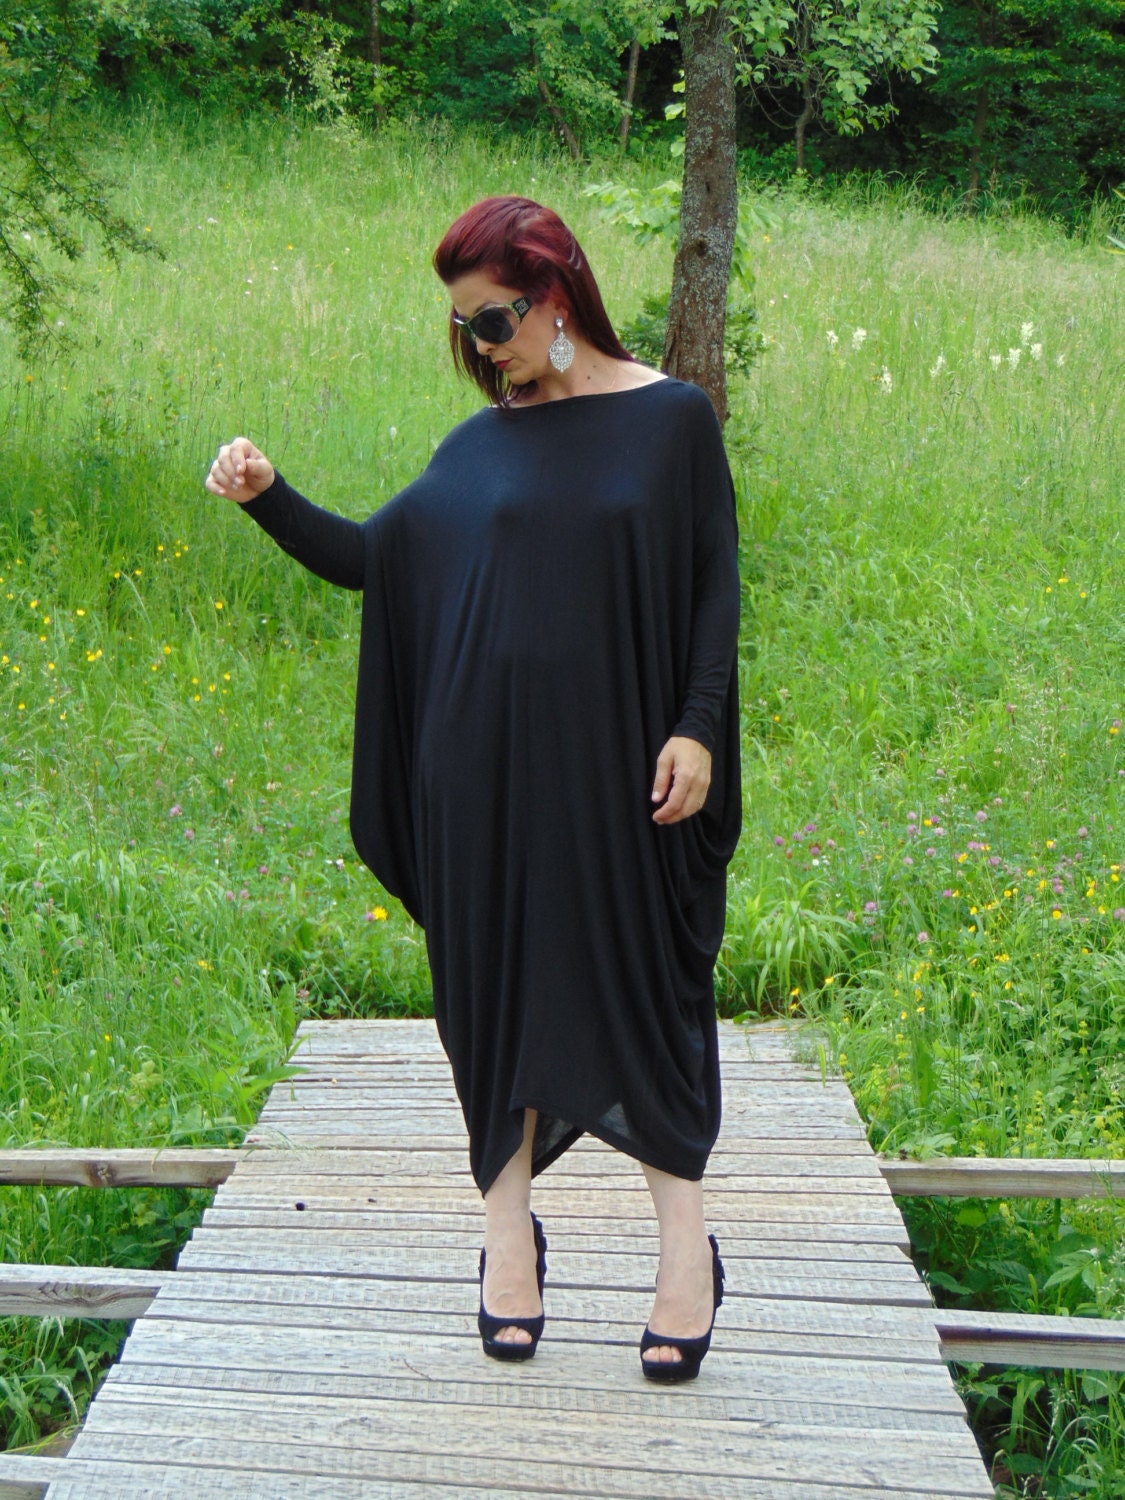 Oversize Black Dress /Summer DRESS/Cover up dress/Black